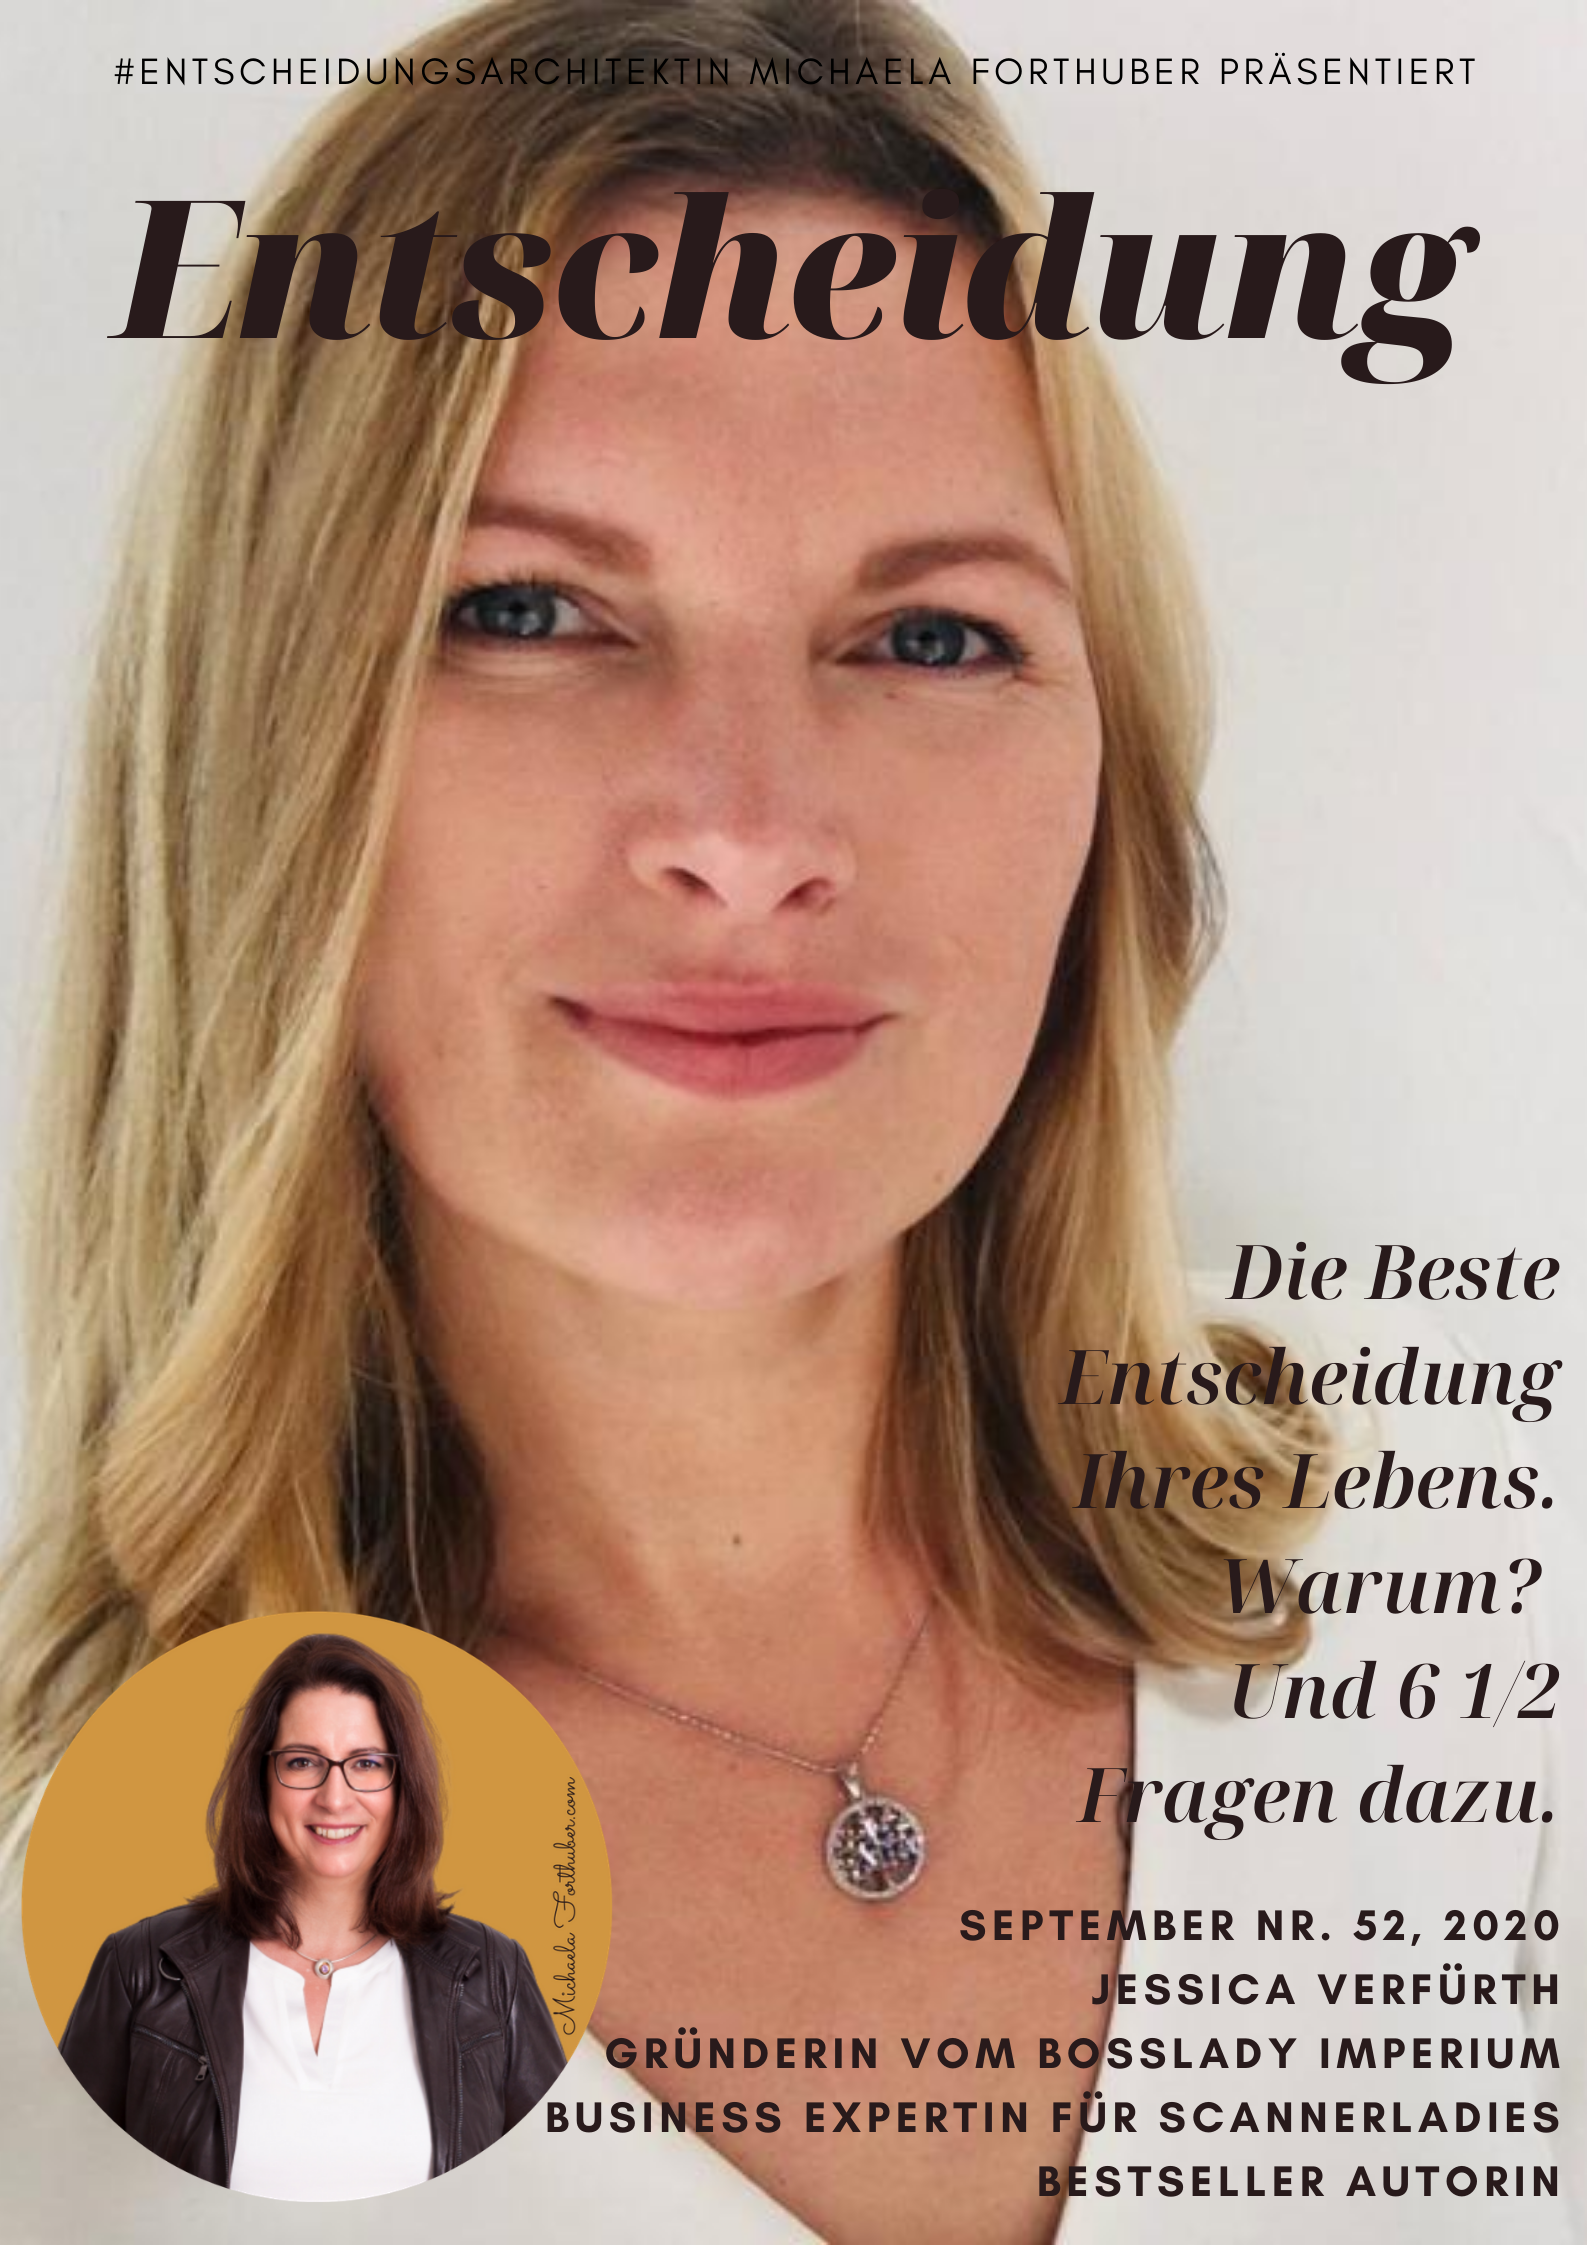 Blog Interview Entscheiden Cover Michaela Forthuber #Entscheidungsarchitektin mit Jessica Verfürth